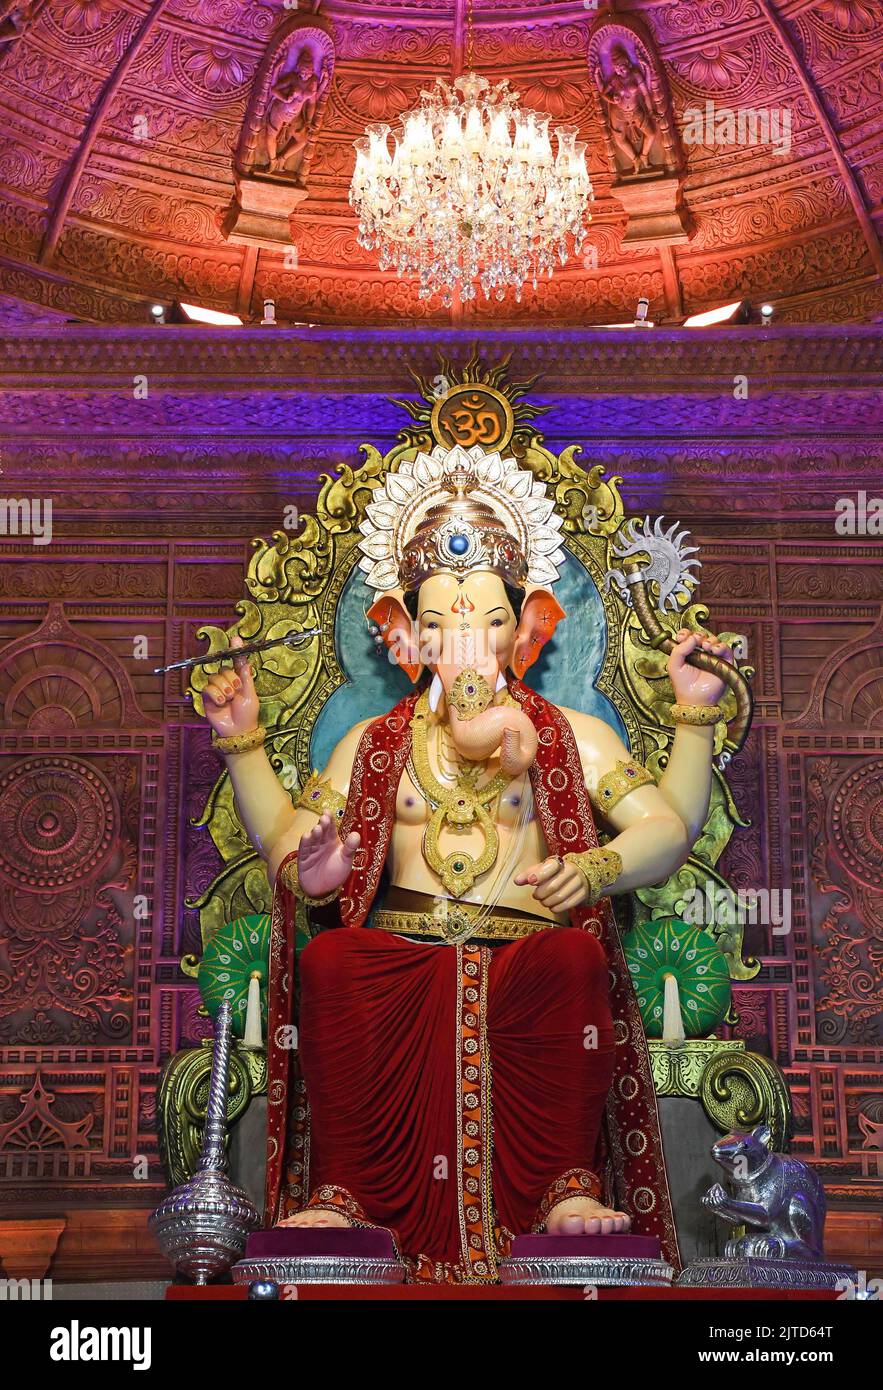 Mumbai, India. 29th Aug, 2022. An idol of elephant-headed Hindu god ...